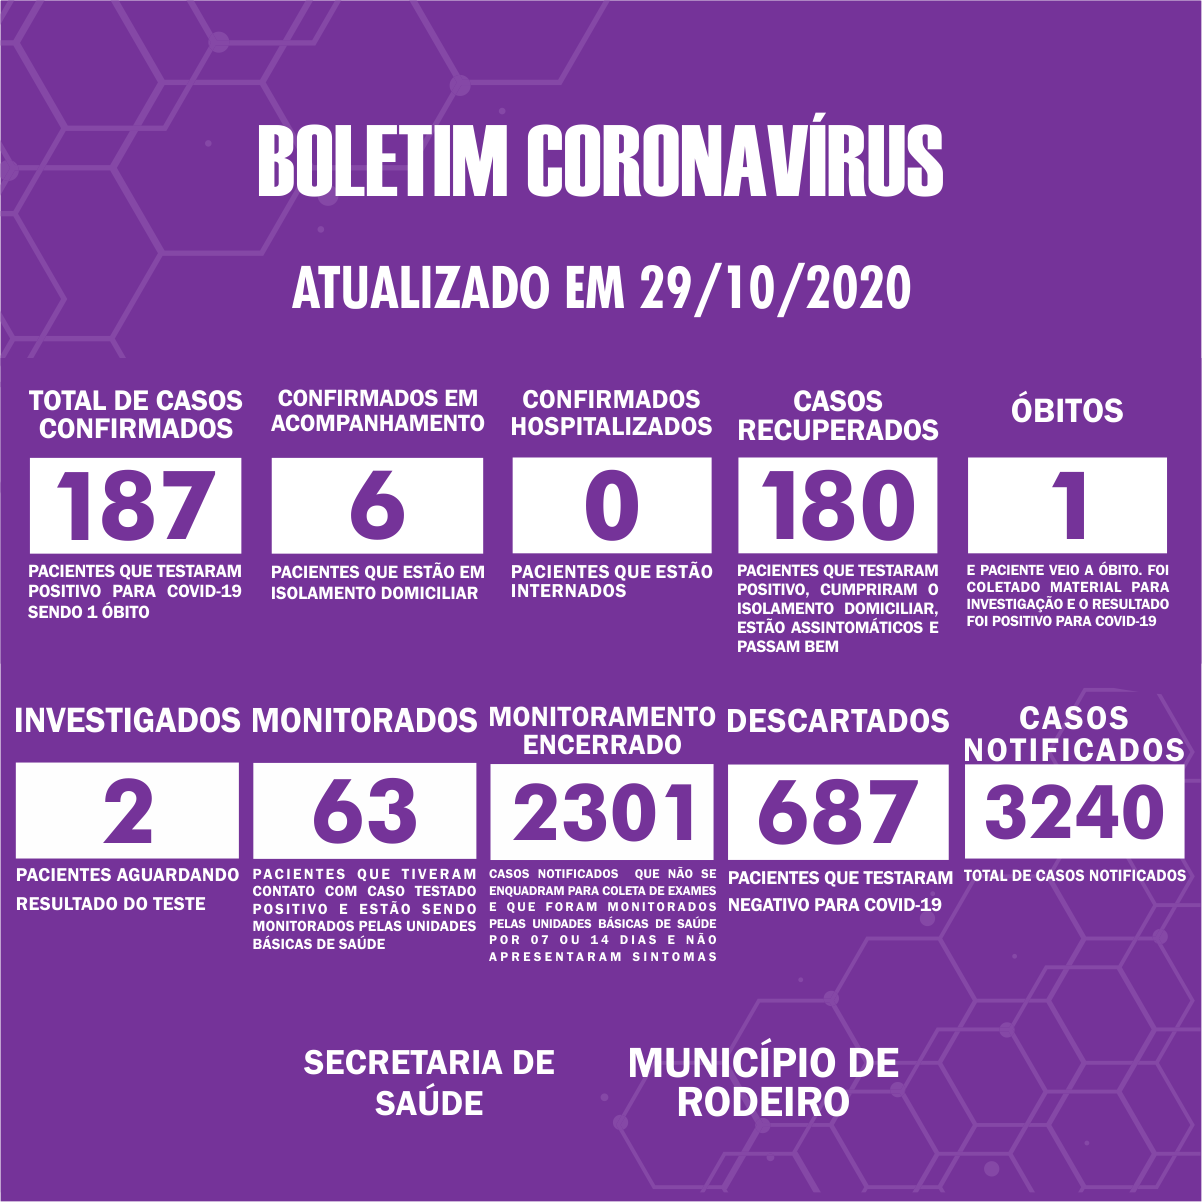 ✔Boletim Epidemiológico do Município de Rodeiro sobre coronavírus, atualizado em 29/10/2020.  